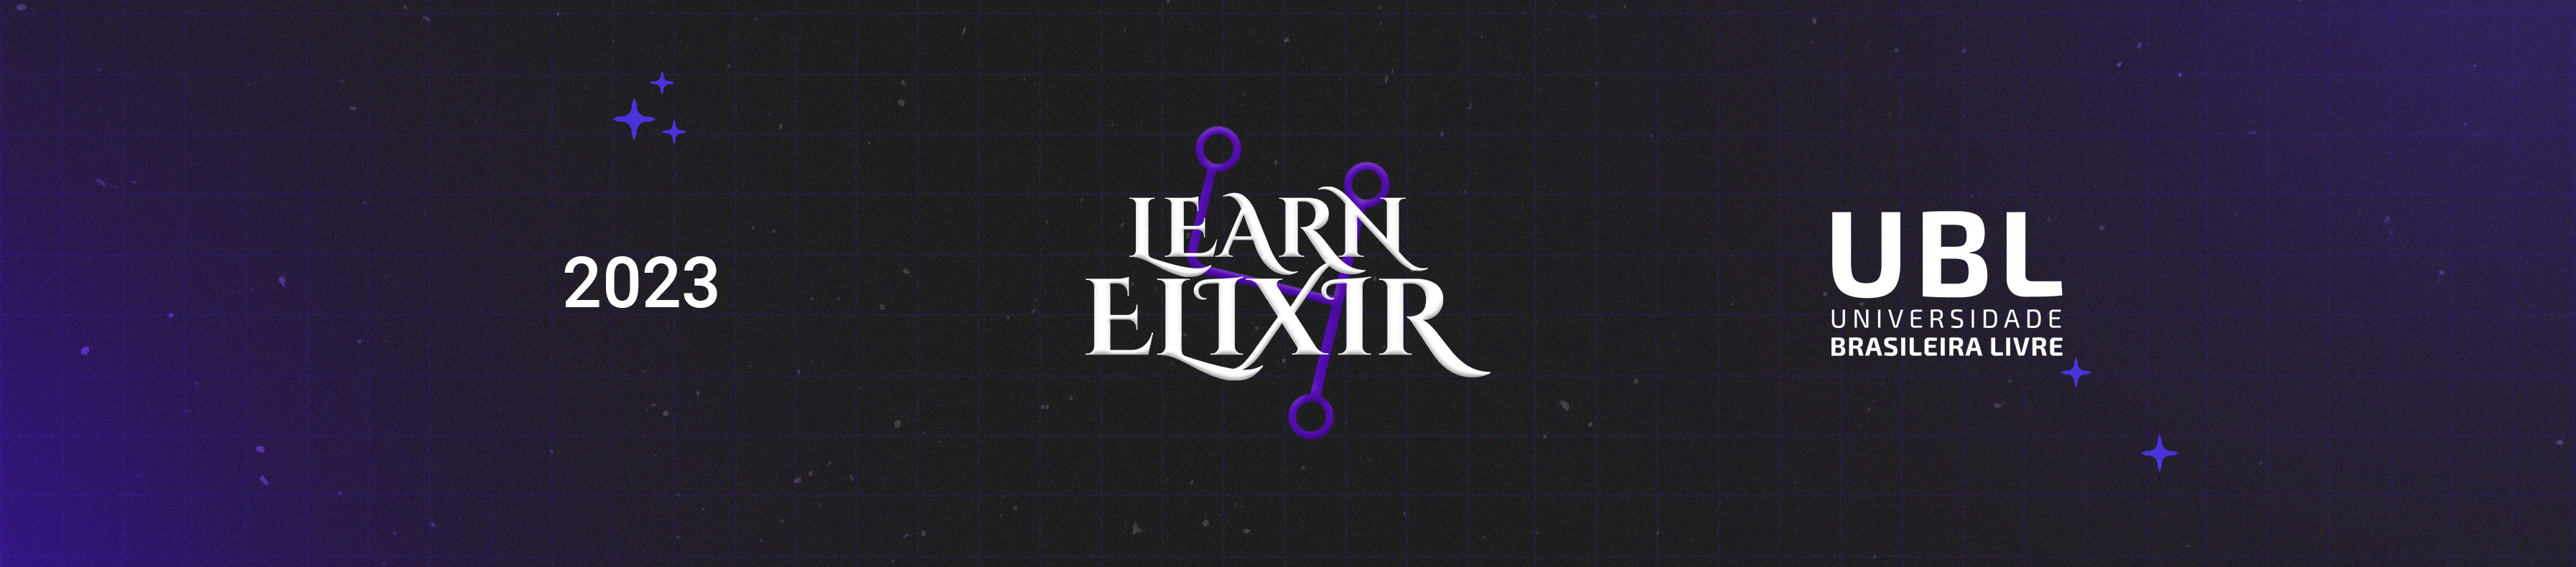 Learn4Elixir